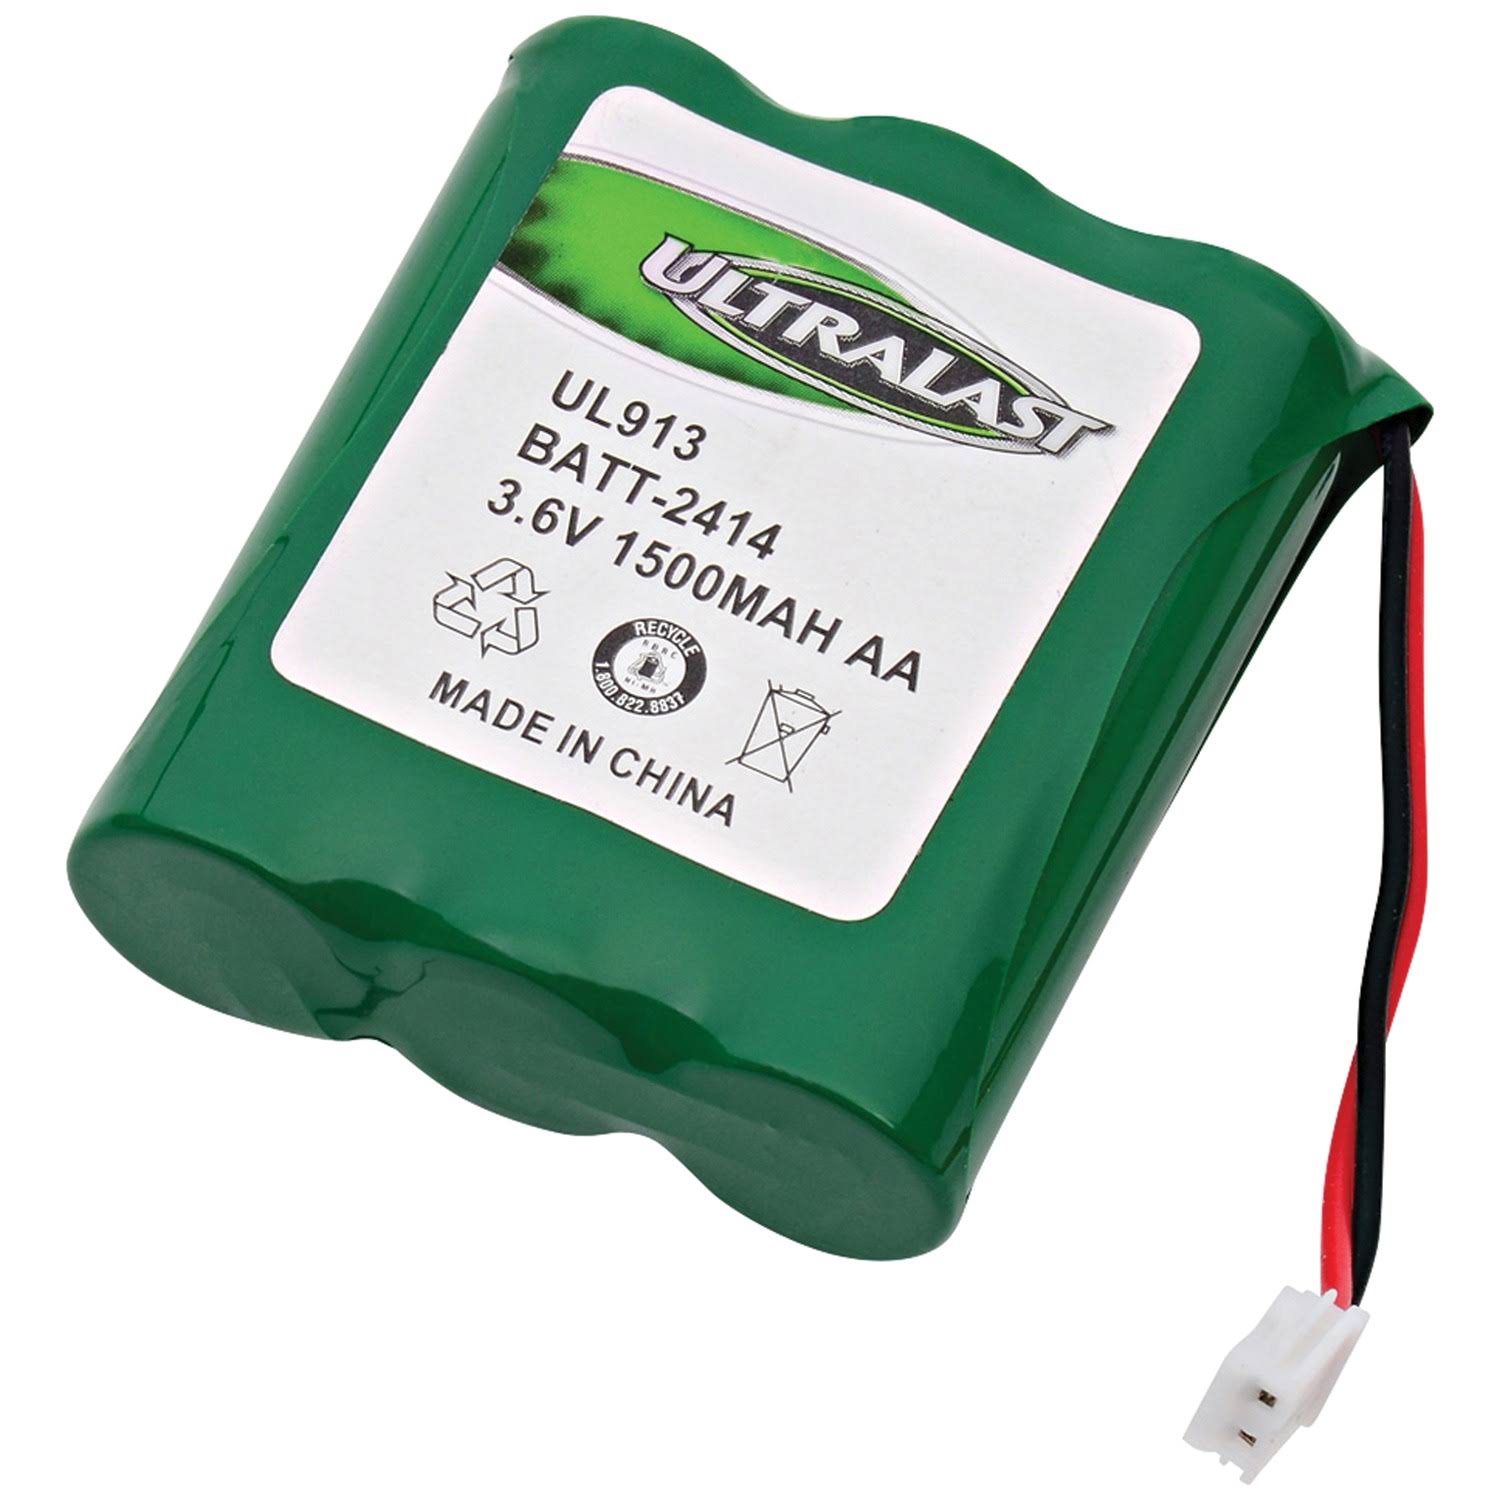 Ultralast NiMH AA 3.6 Volt Cordless Phone Battery Batt-2414 1 Pk